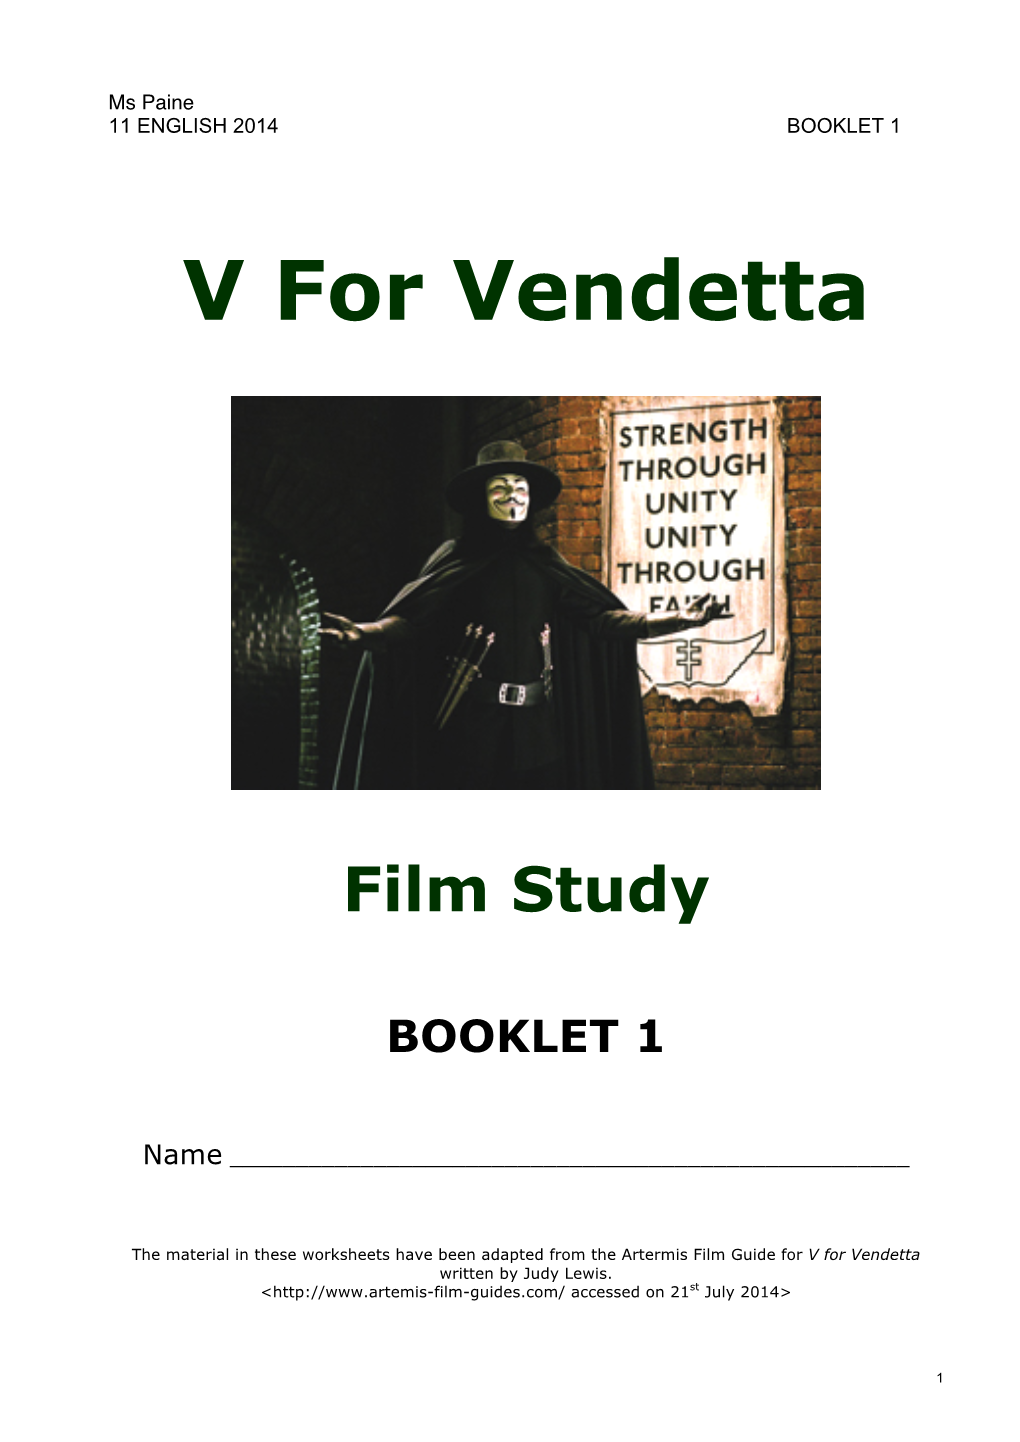 V for Vendetta Booklet 1